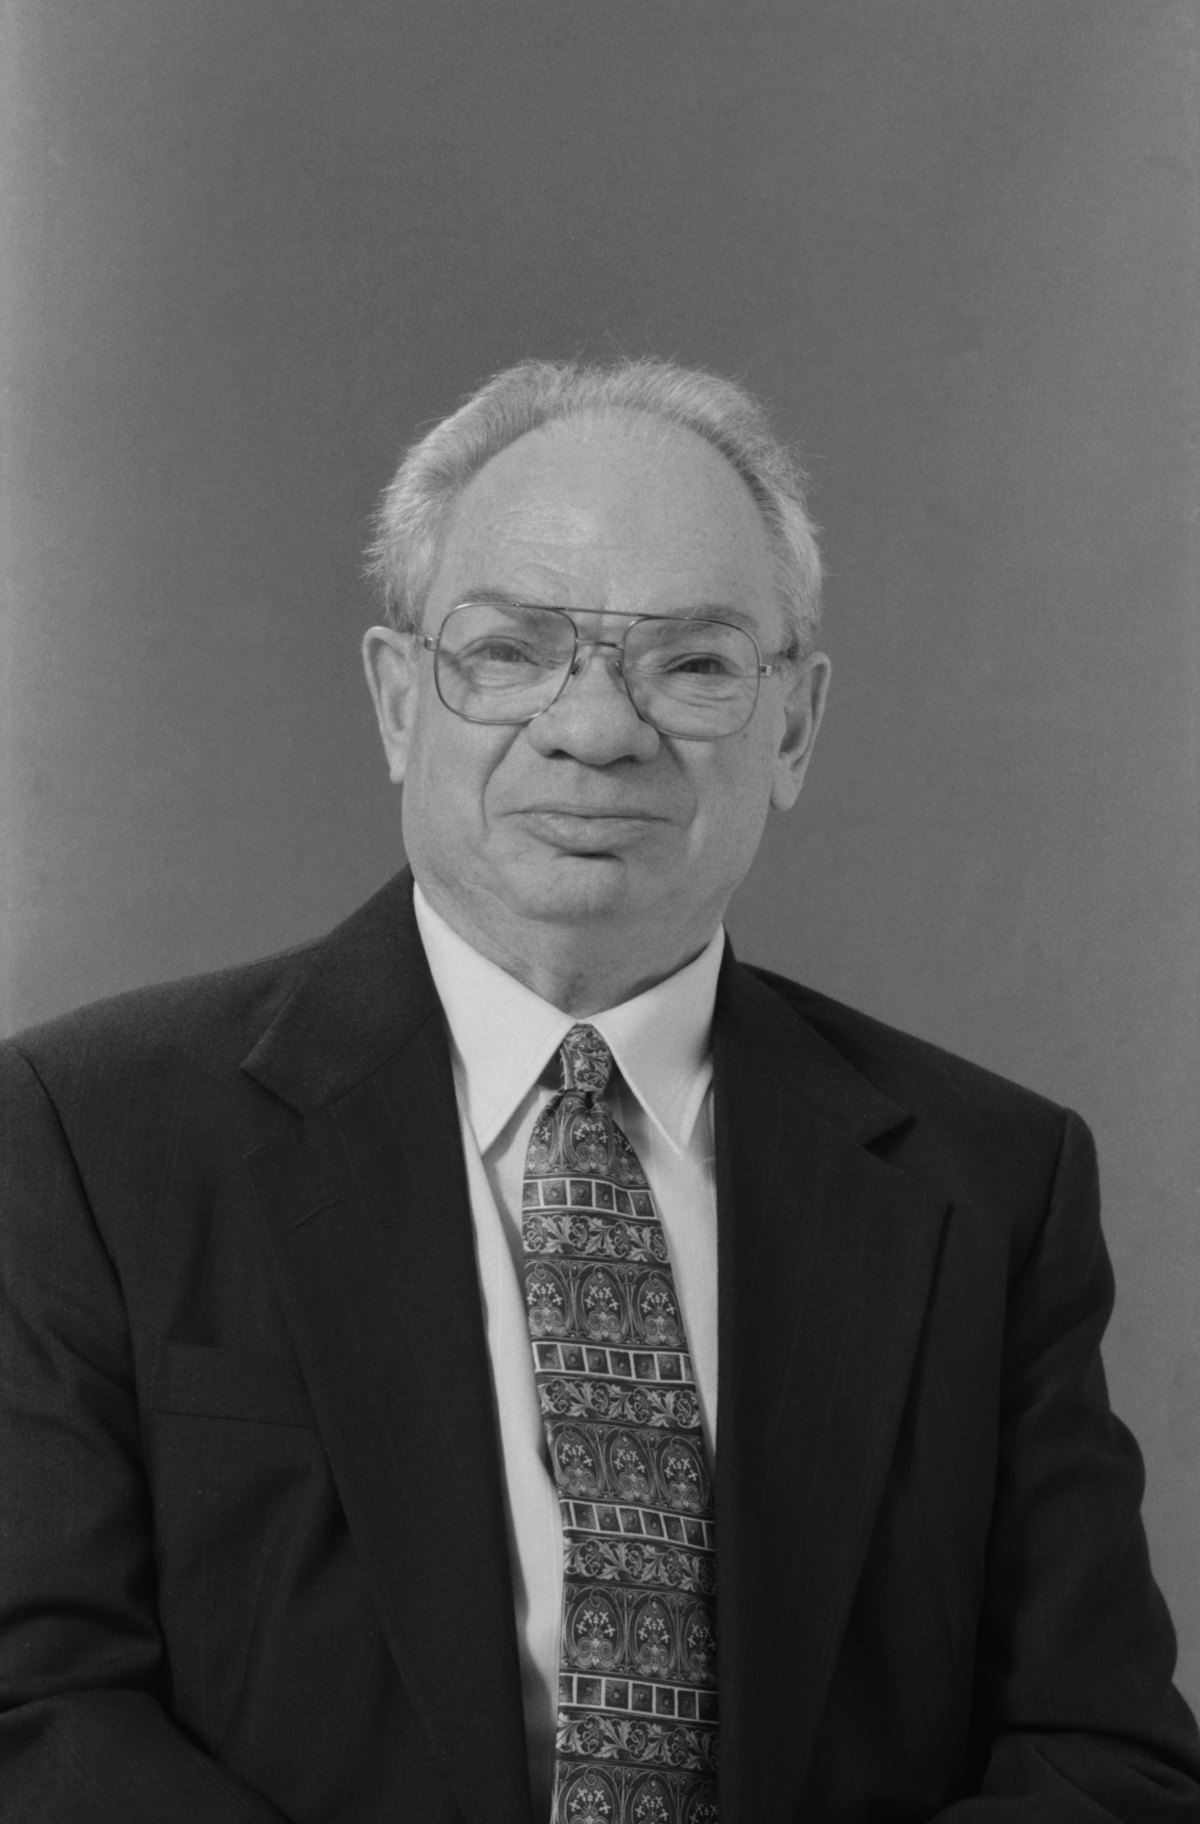 Mr. Fred Schechter